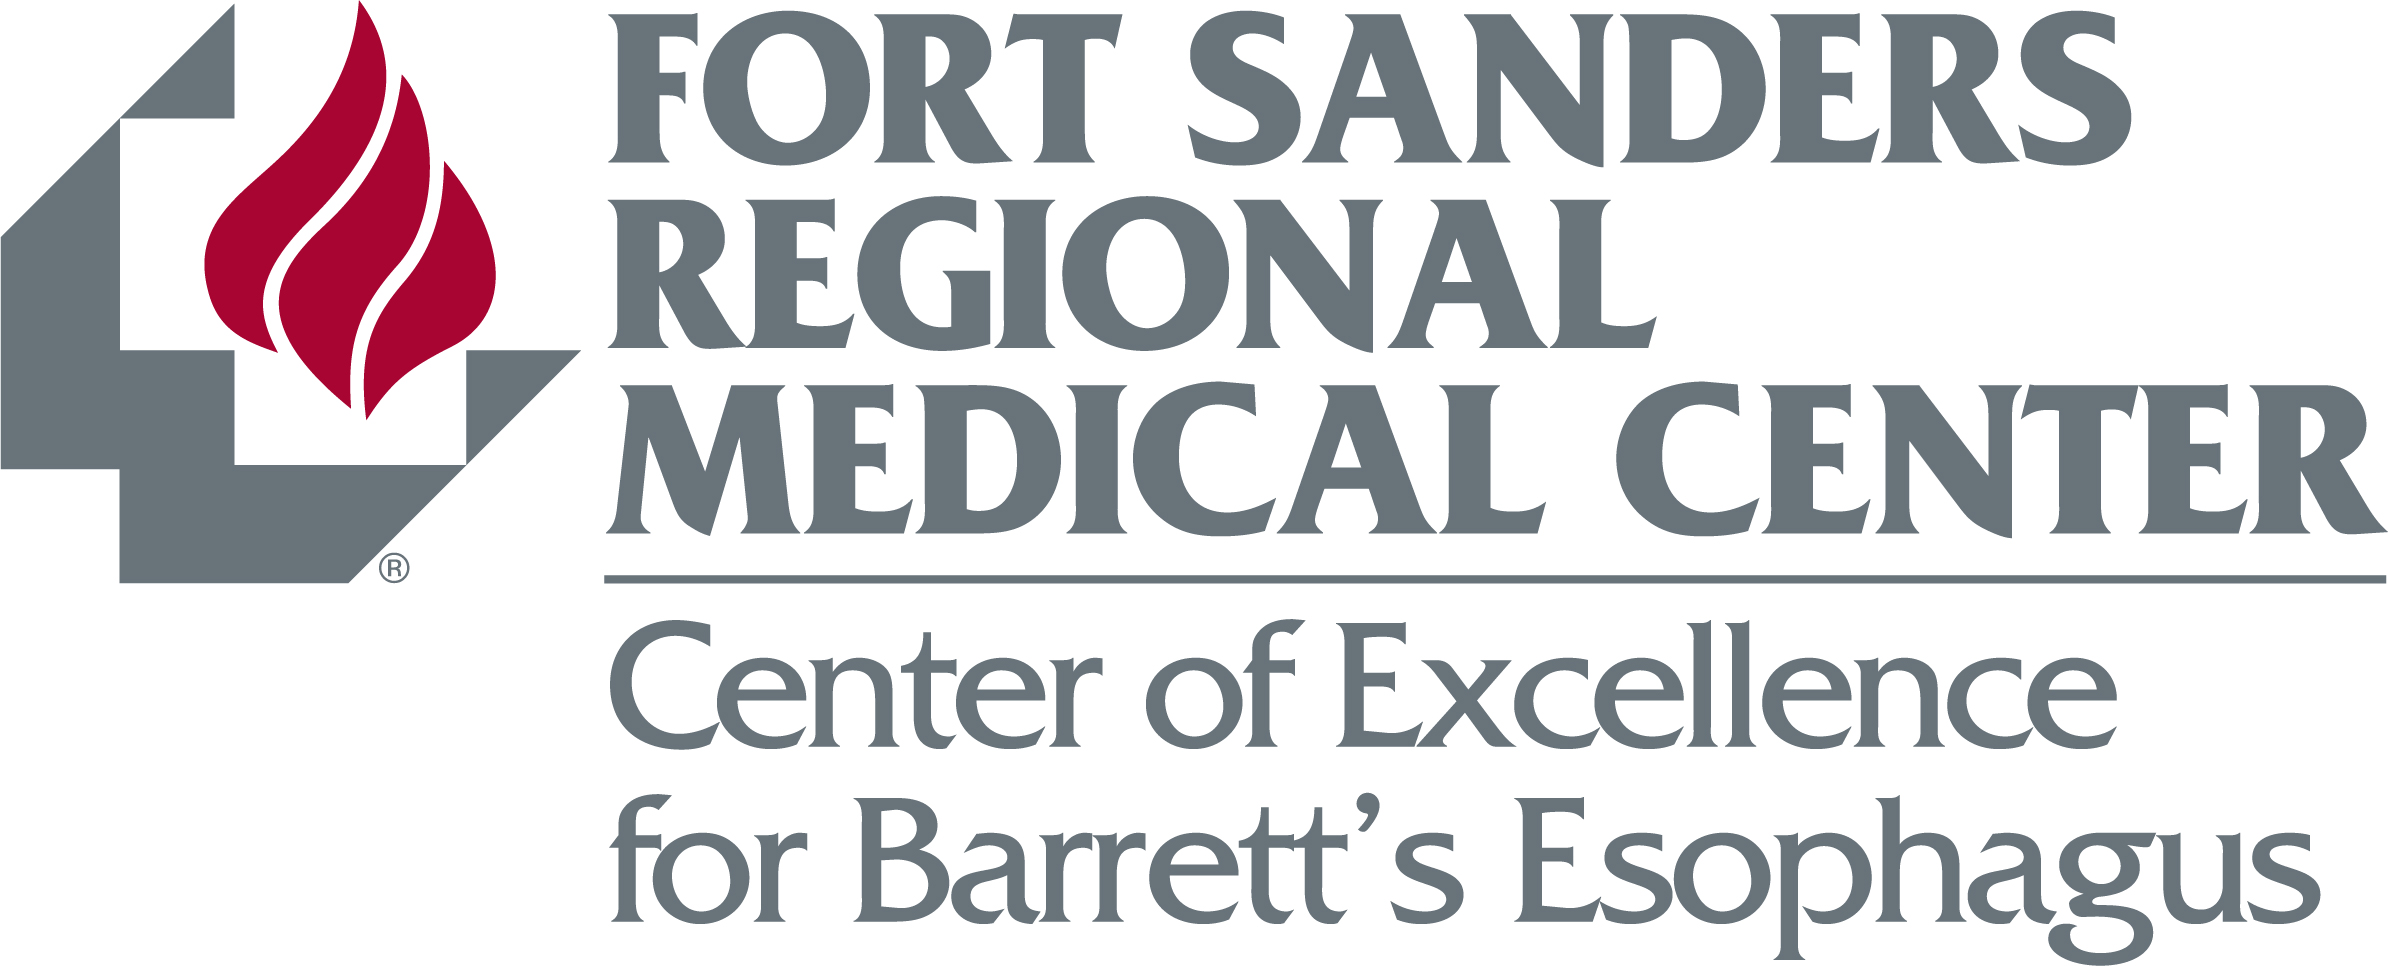 Center of Excellence for Barrett's Esophagus logo 